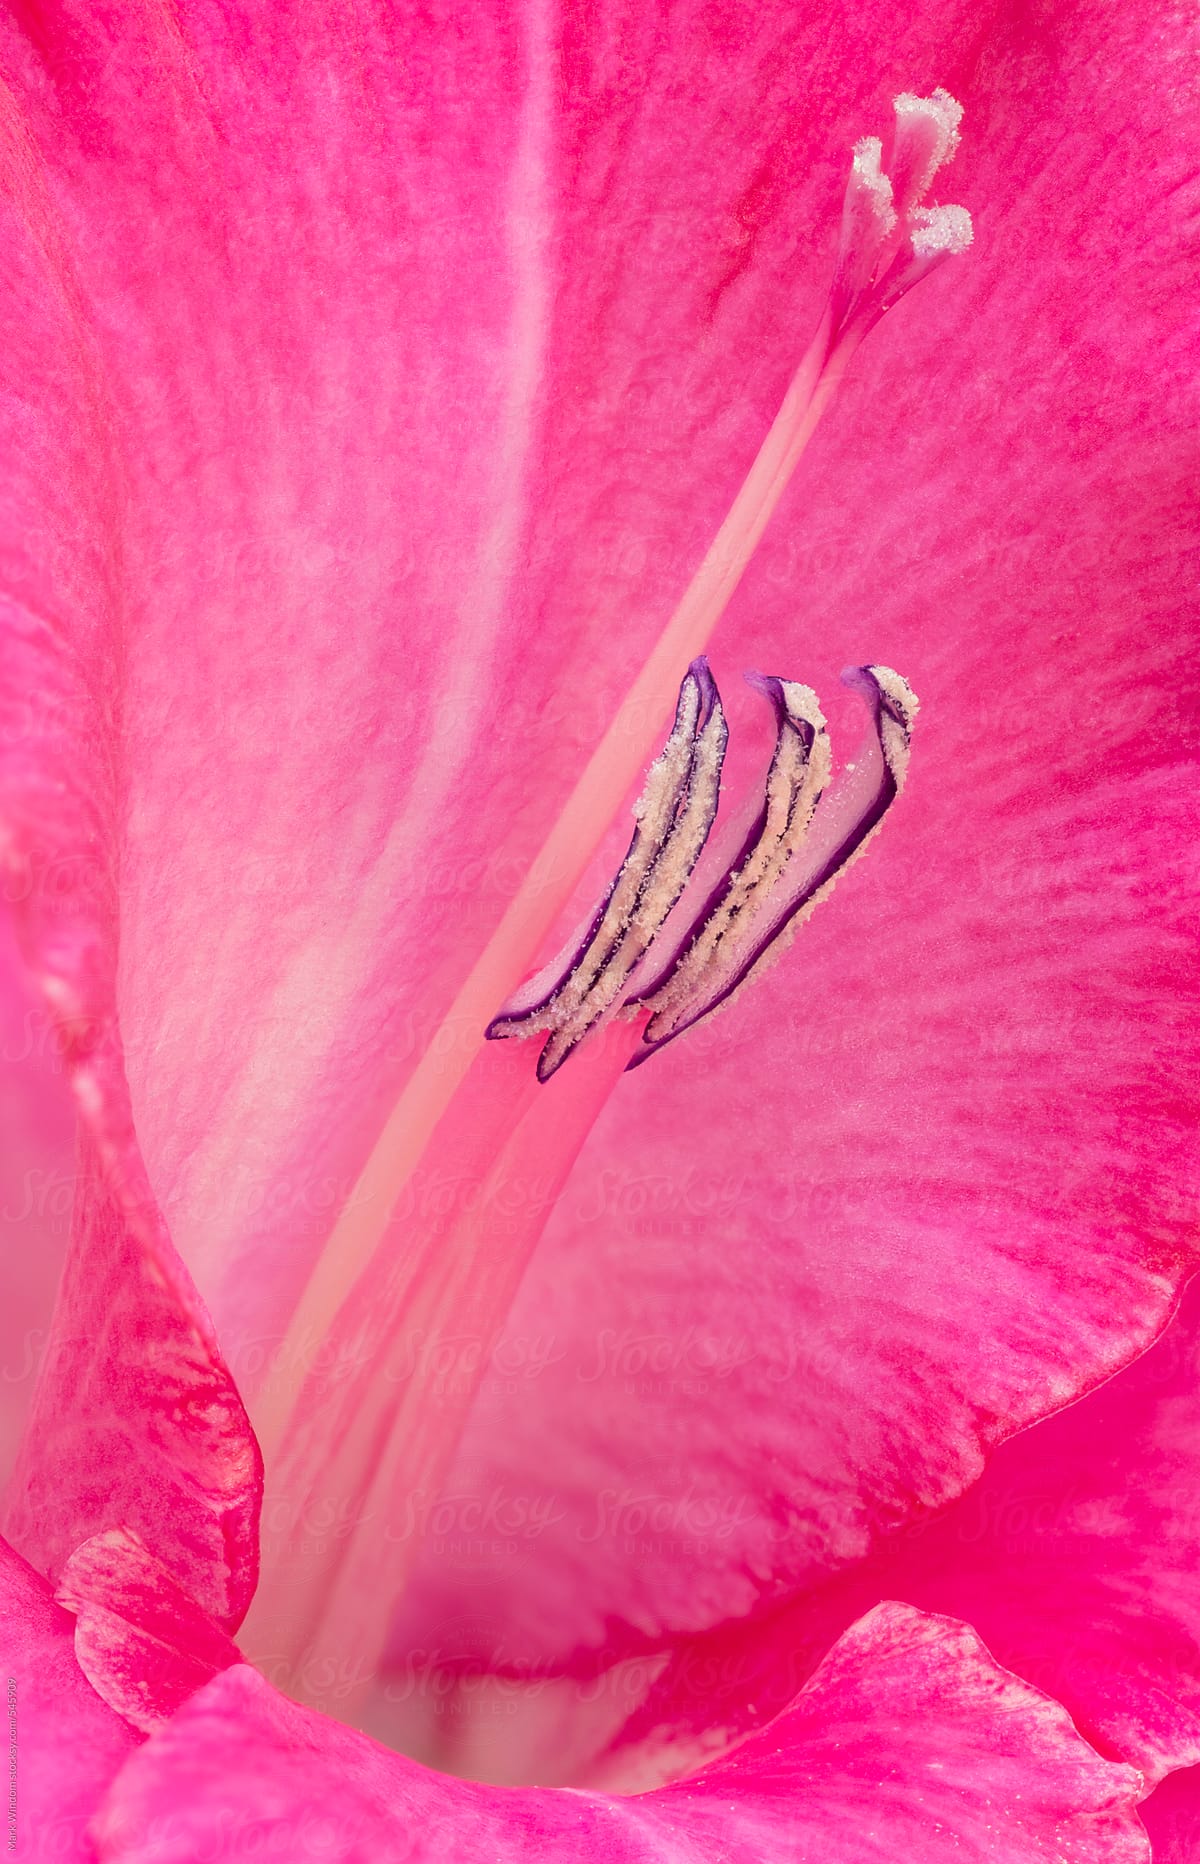 Gladiolus blossom, closeup